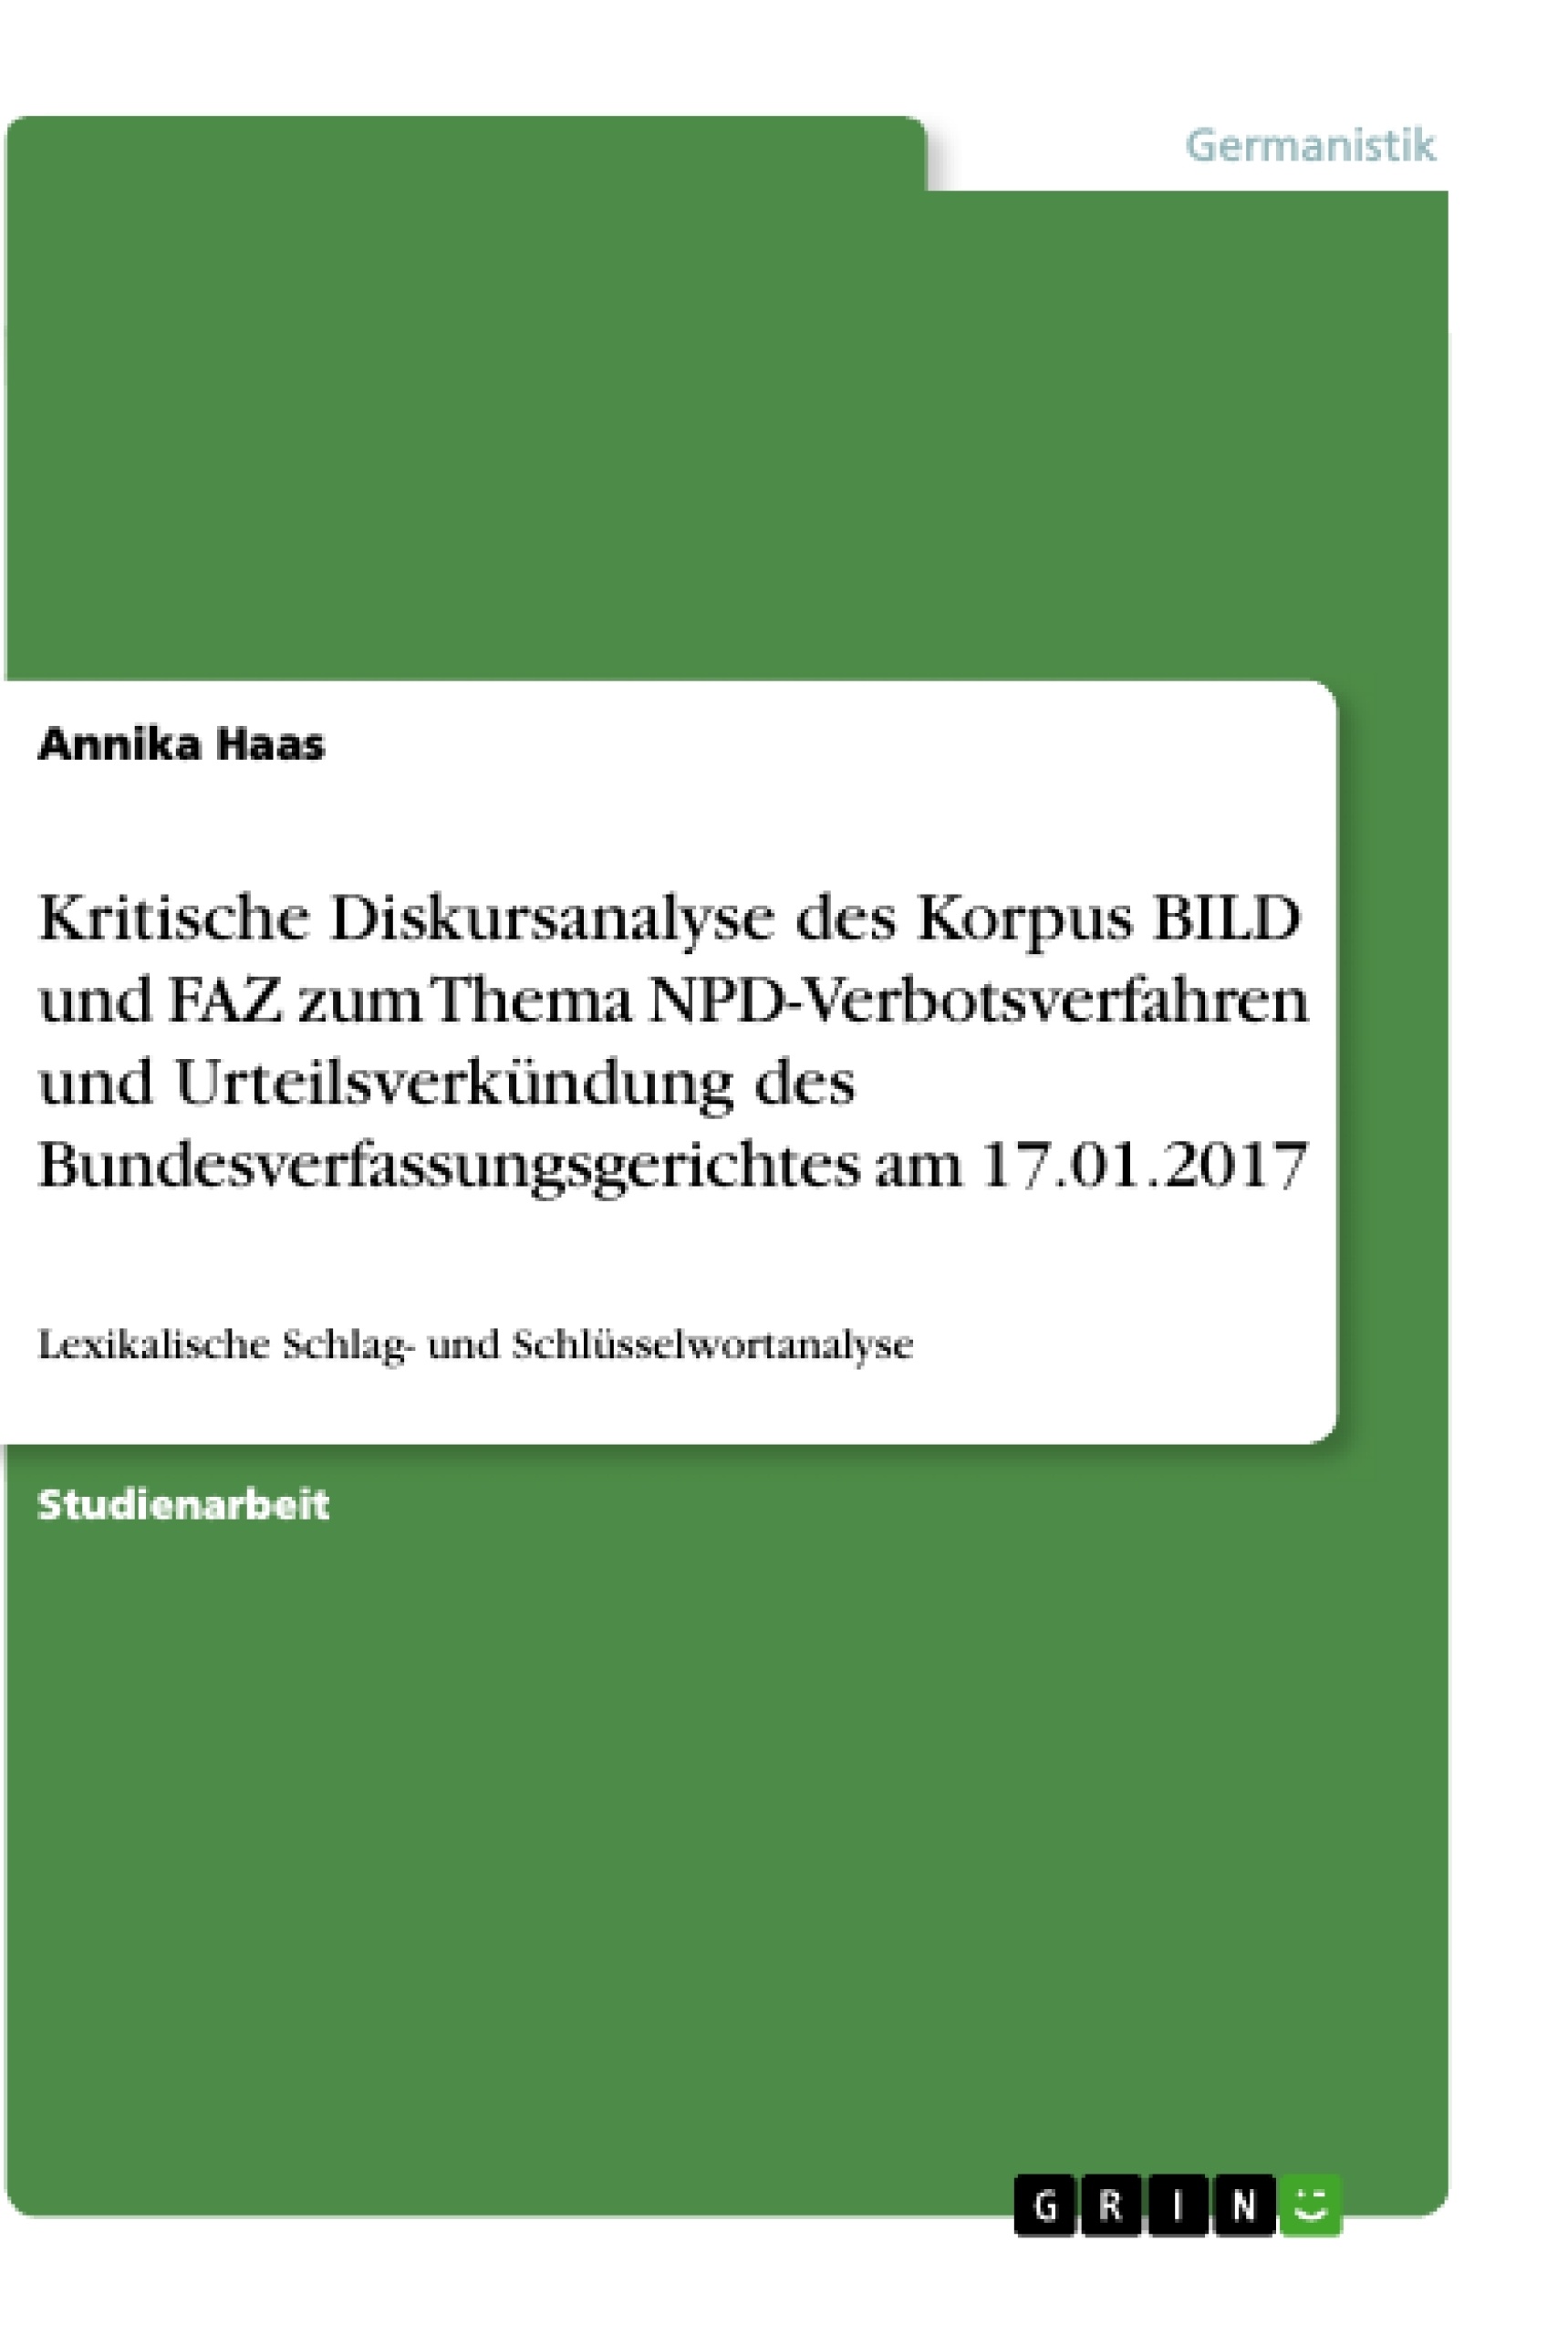 Título: Kritische Diskursanalyse des Korpus BILD und FAZ zum Thema NPD-Verbotsverfahren und Urteilsverkündung des Bundesverfassungsgerichtes am 17.01.2017